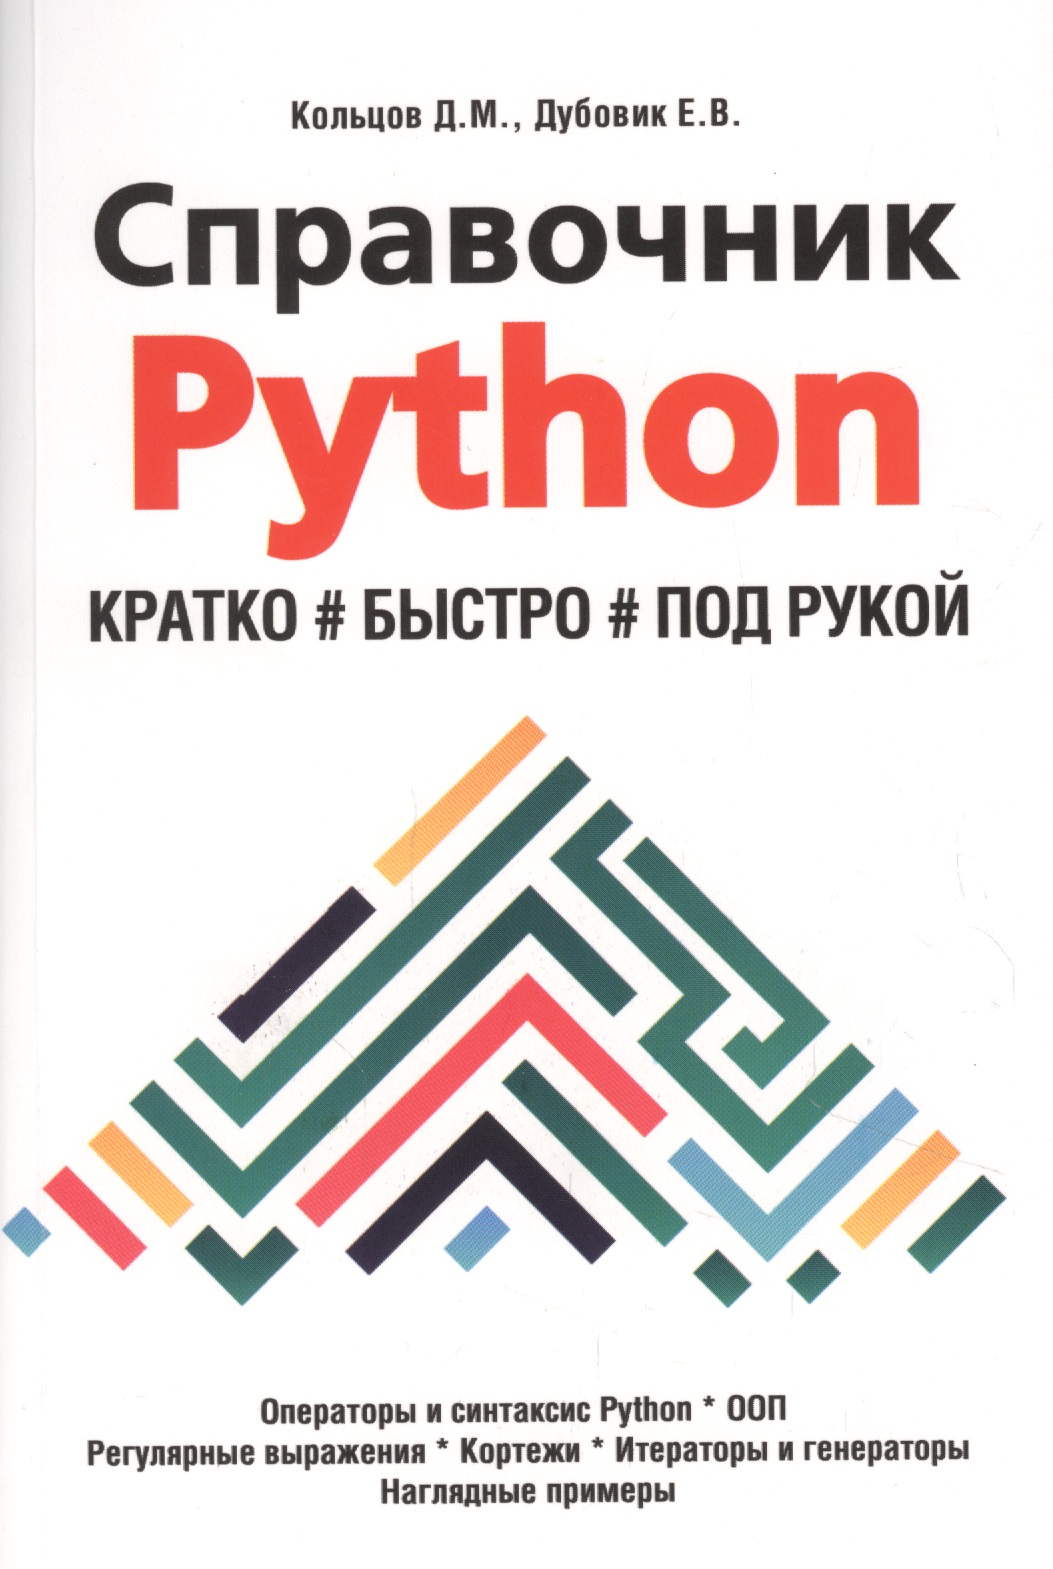 программирование на python для начинающих Кольцов Д. М. Справочник PYTHON. Кратко, быстро, под рукой